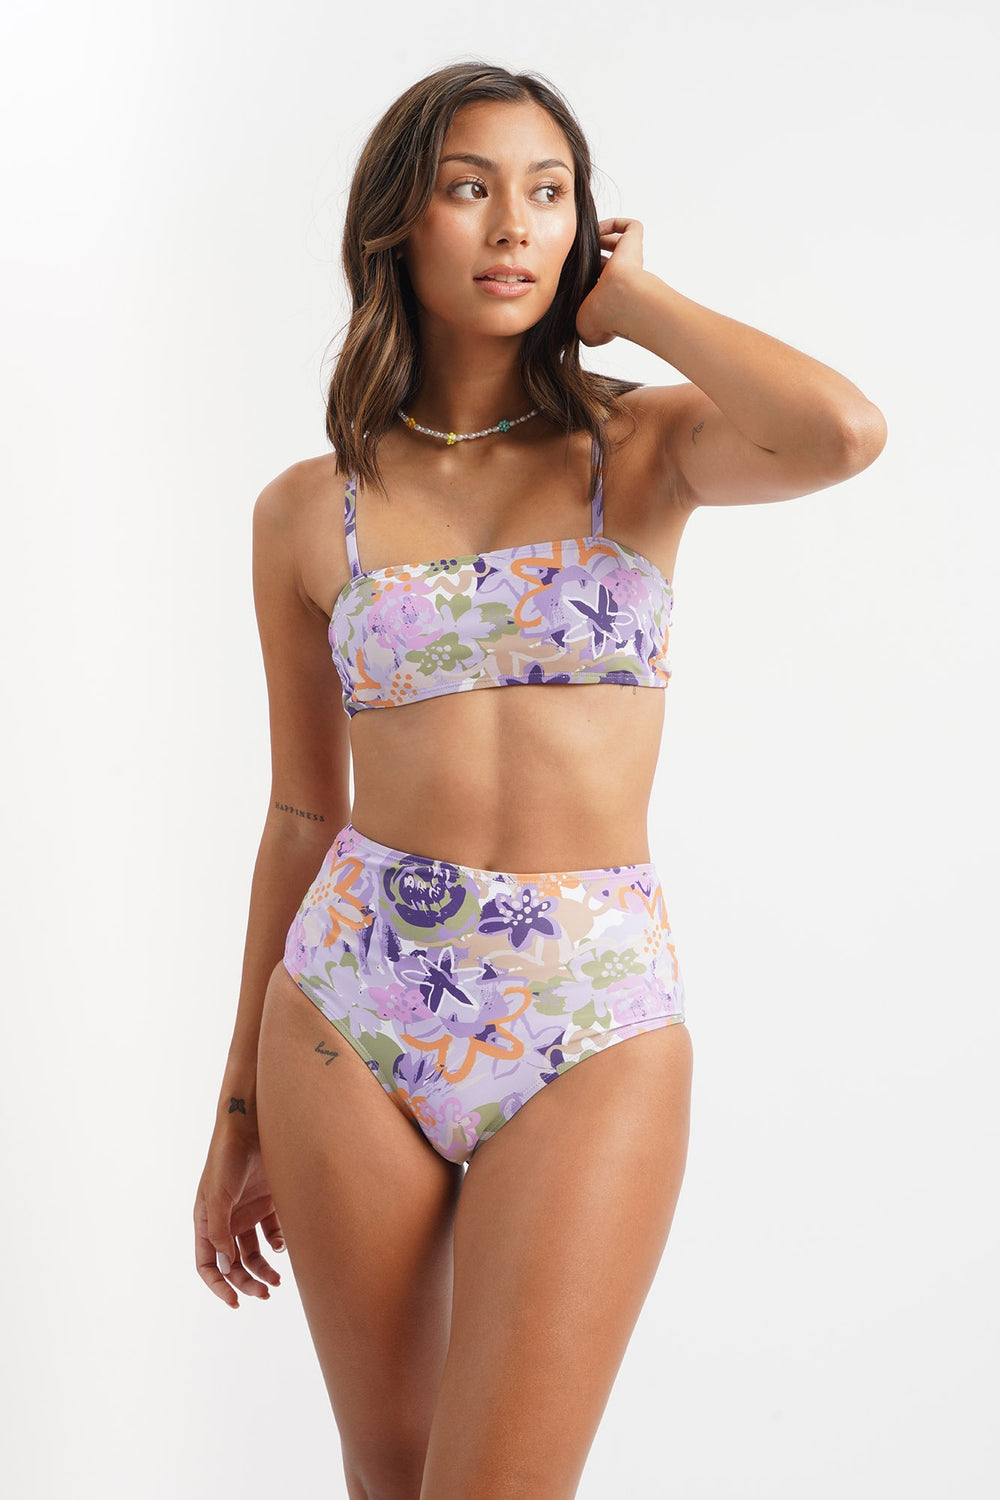 Penshoppe Core Women's Two-piece Floral Swimsuit